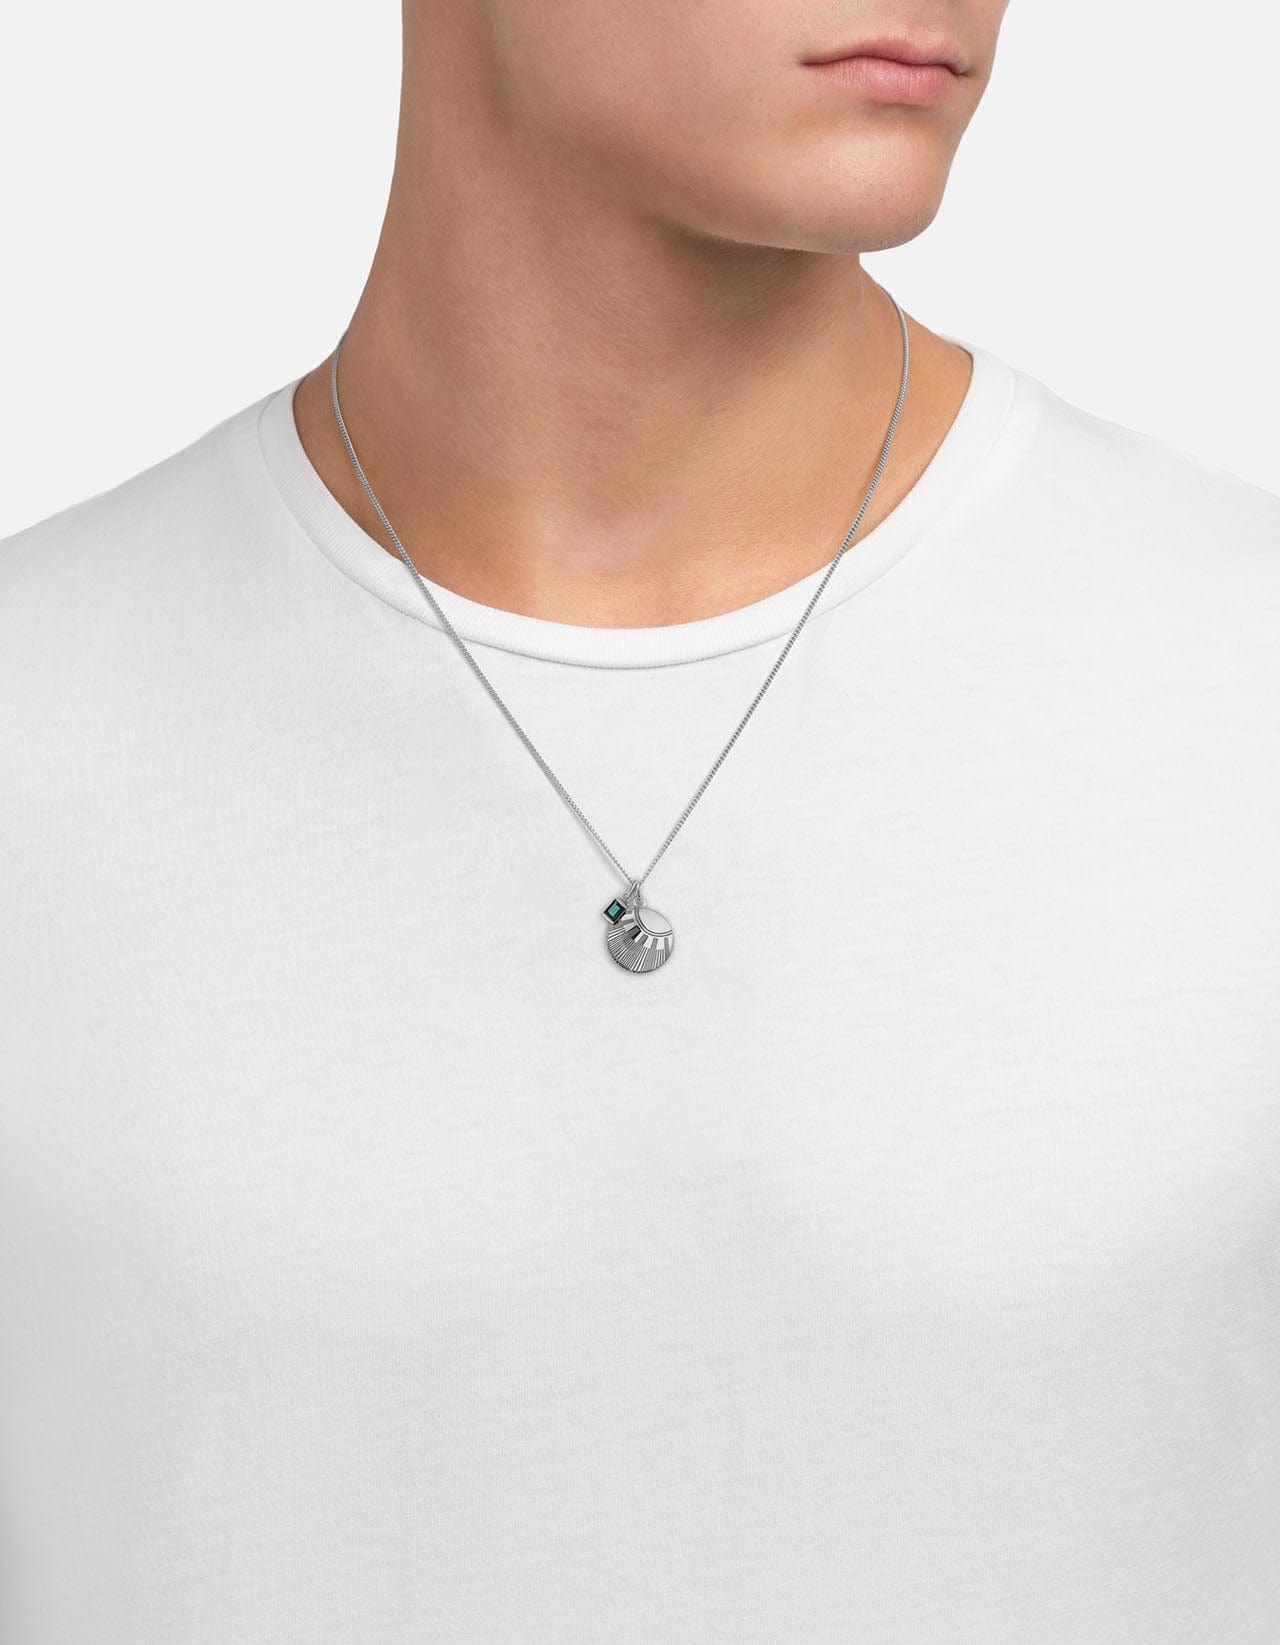 Meridian Quartz Pendant Necklace, Sterling Silver | Men\'s Necklaces |  Miansai